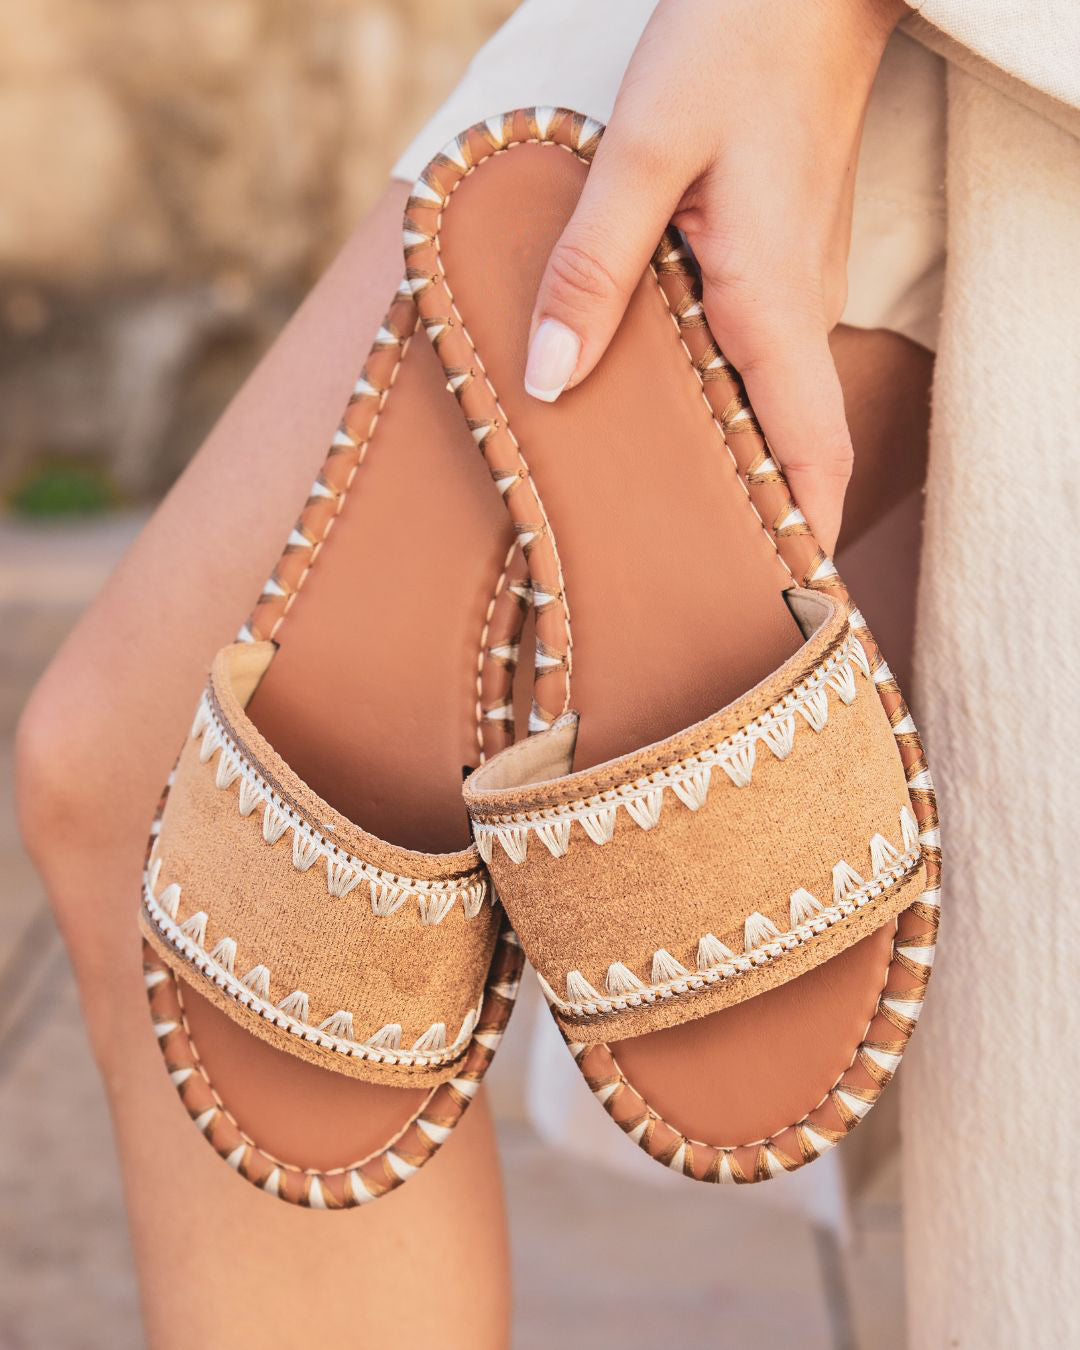 Sandalias de mujer cómodas y planas en color camel - Mara - Casualmode.es